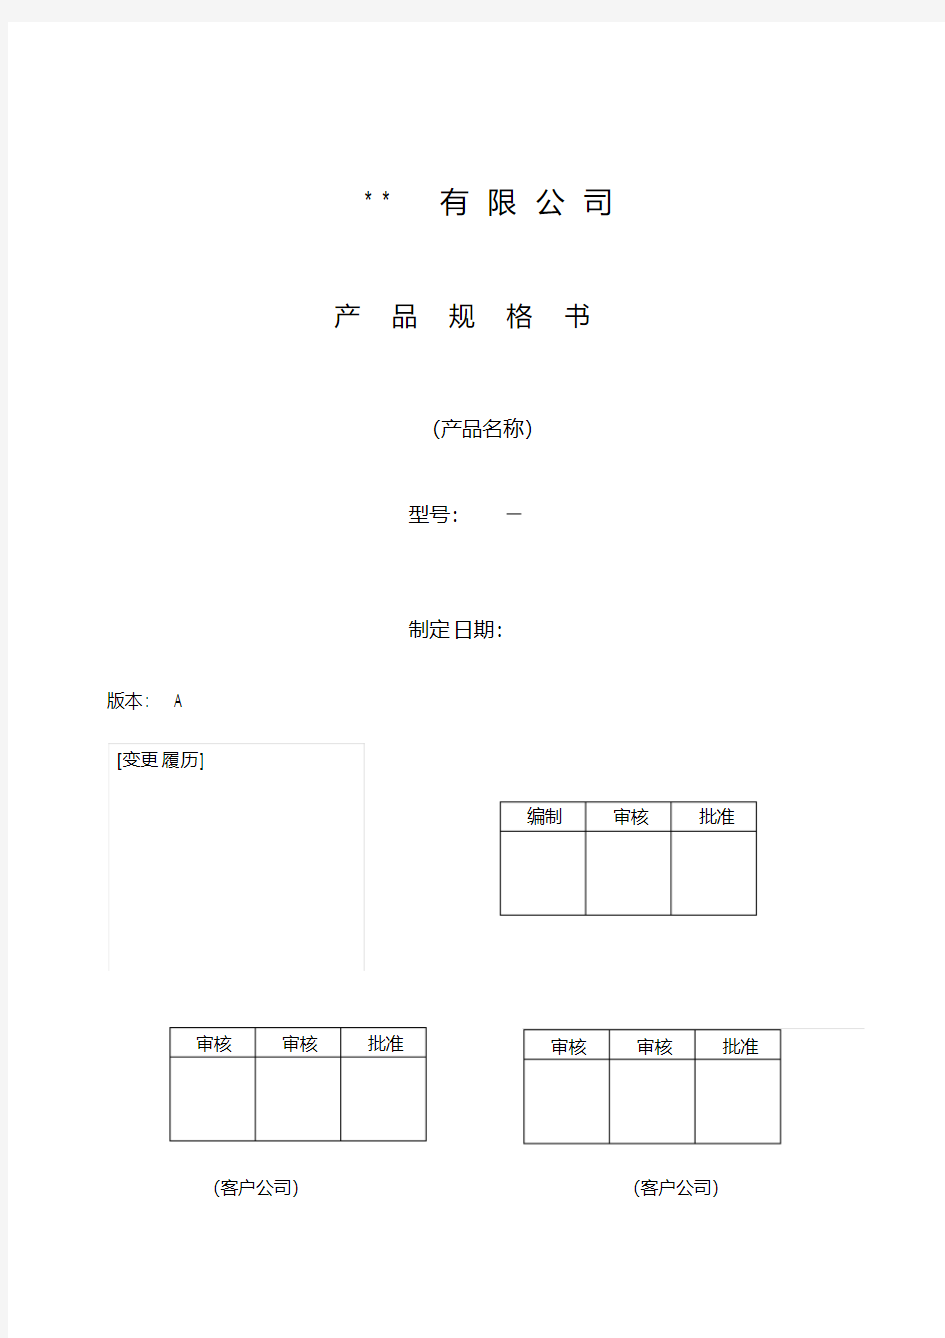 新版电器产品规格书格式.pdf